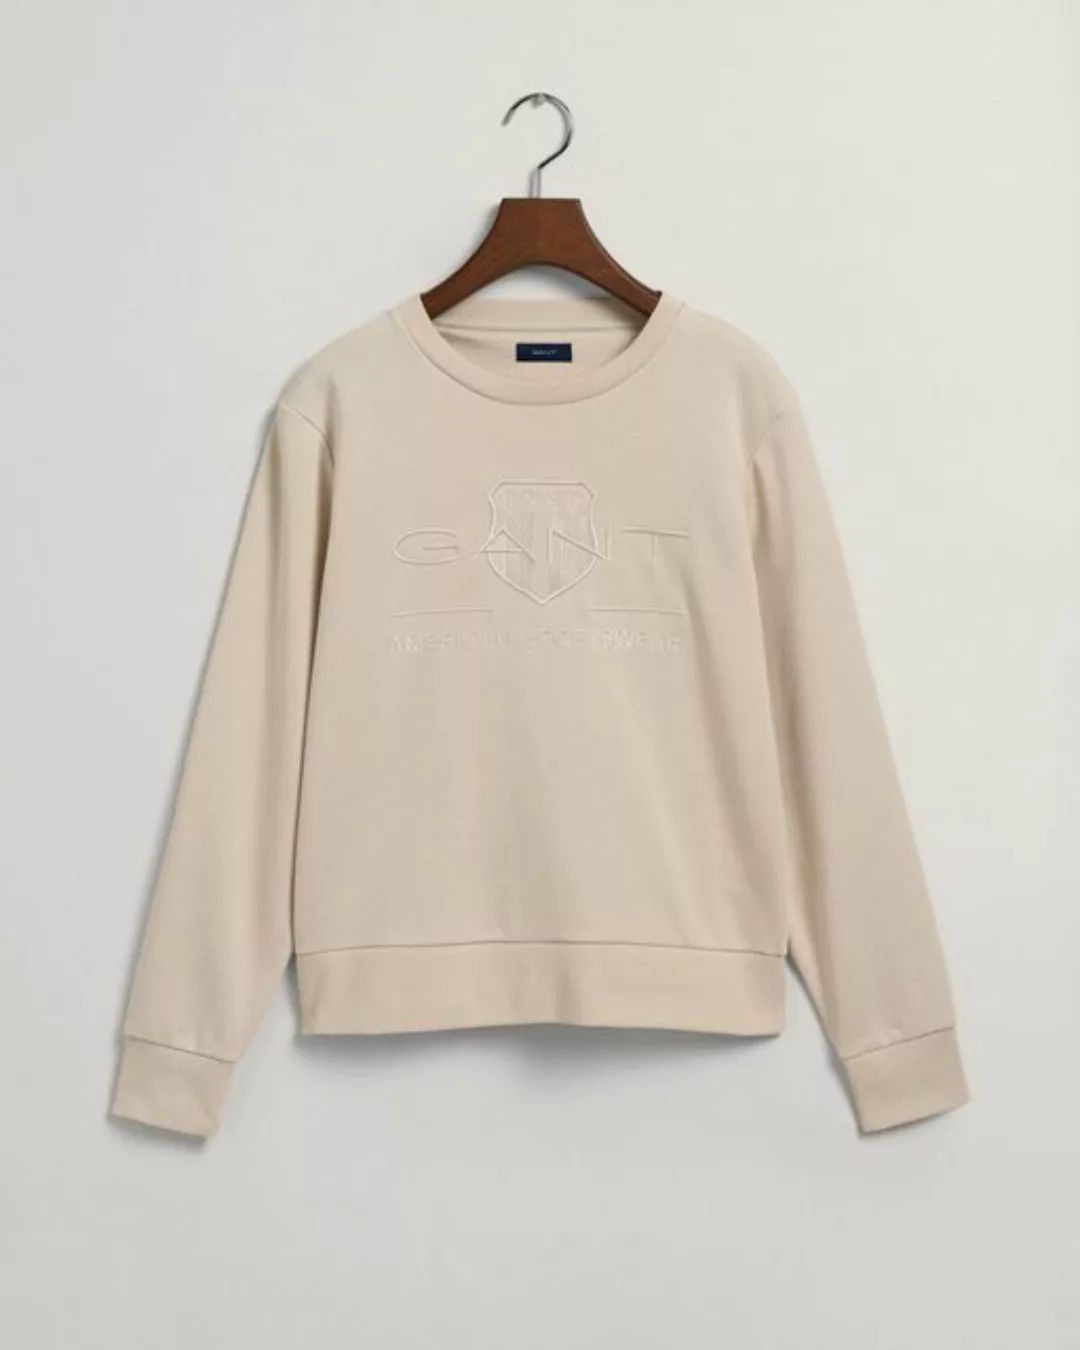 Gant Sweatshirt günstig online kaufen